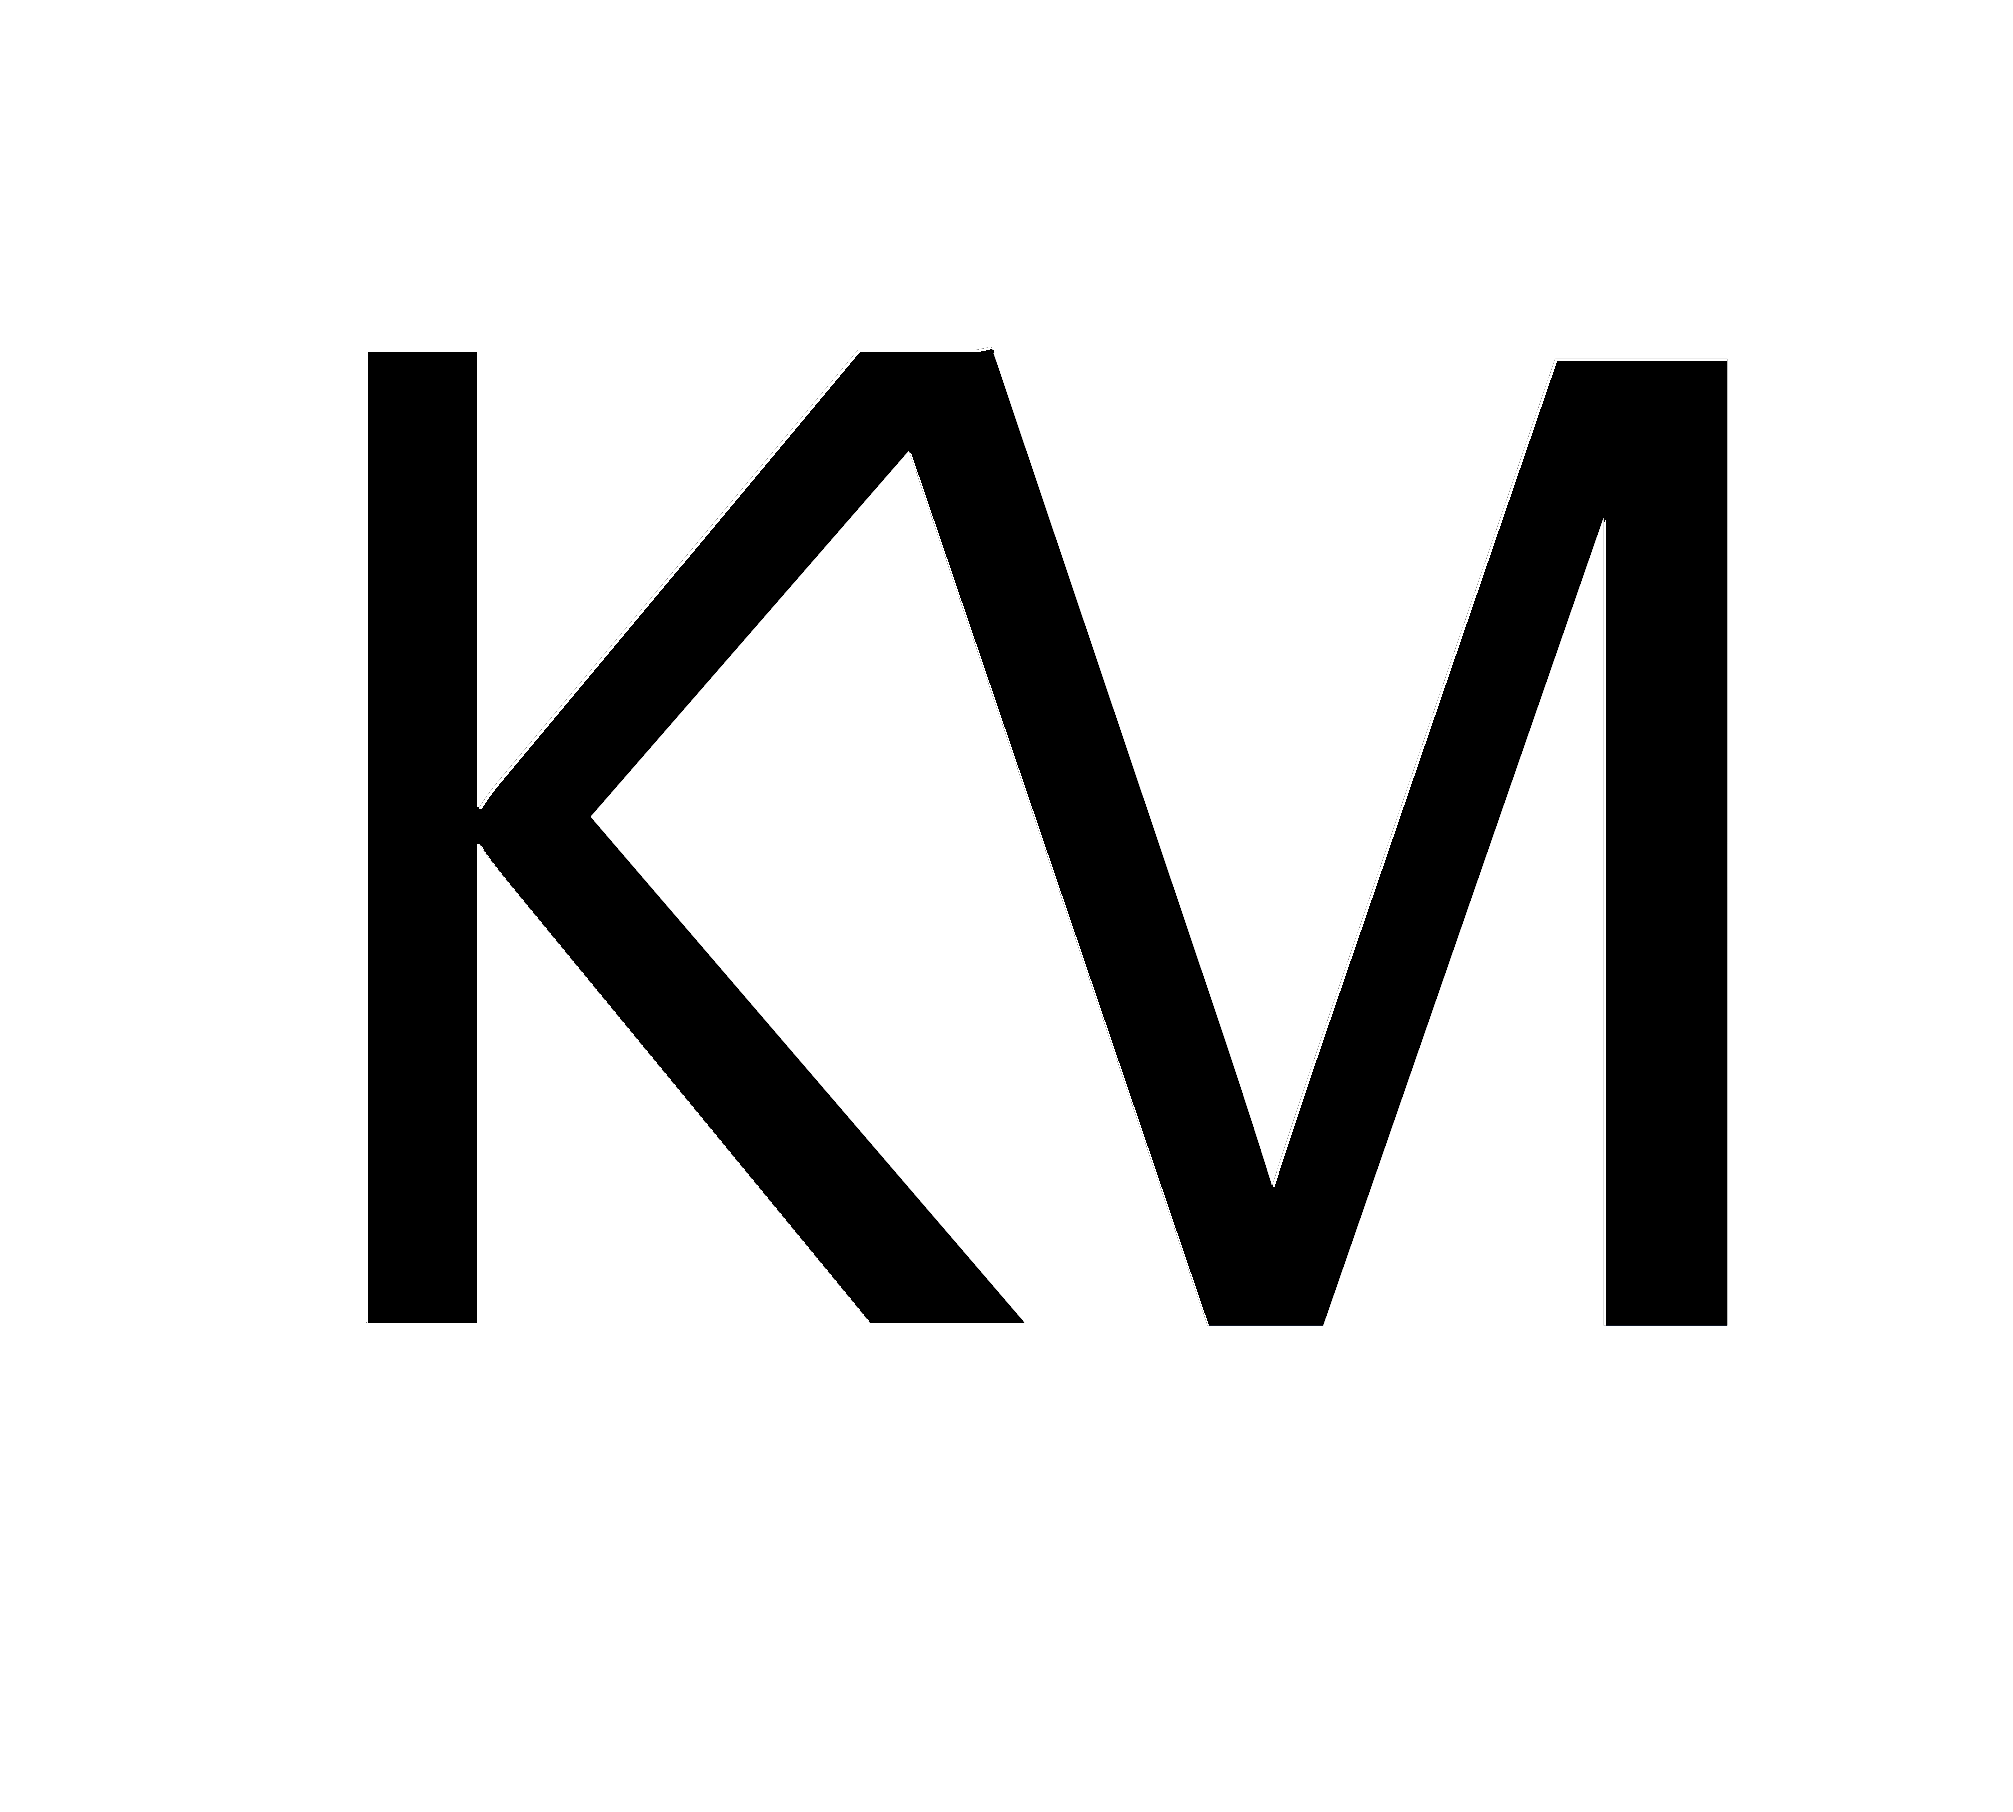 Km Logo - Km Logo by xxqasimxx on DeviantArt